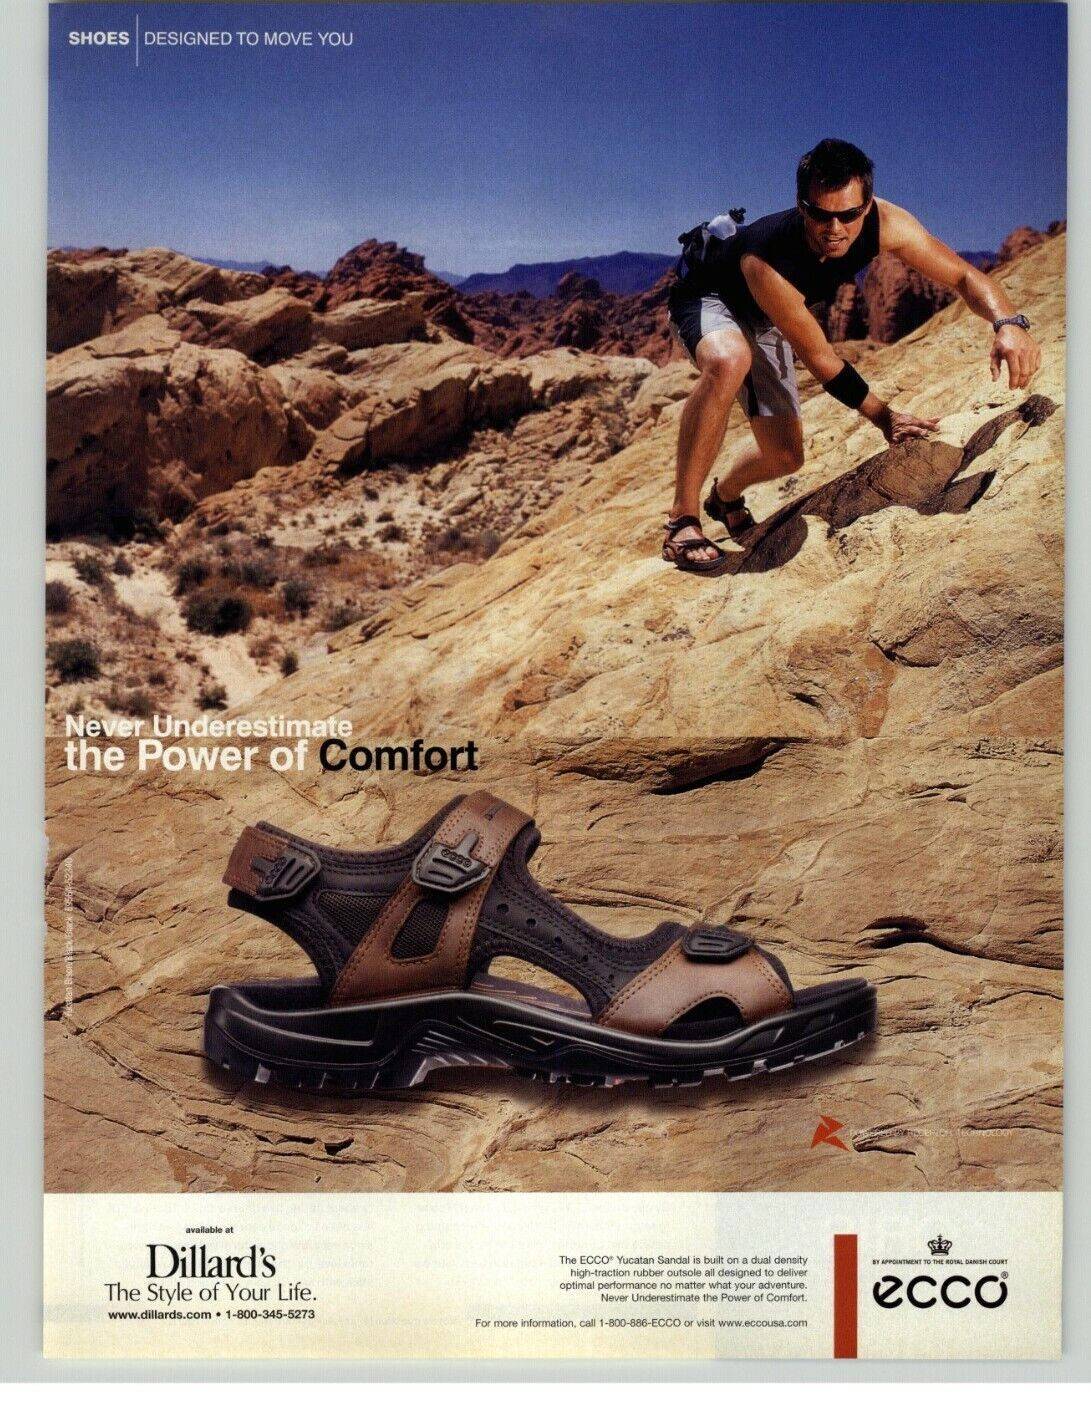 2007 Ecco Yucatan Sandal Man Rock Climbing Photo Vintage Magazine Shoe Print Ad